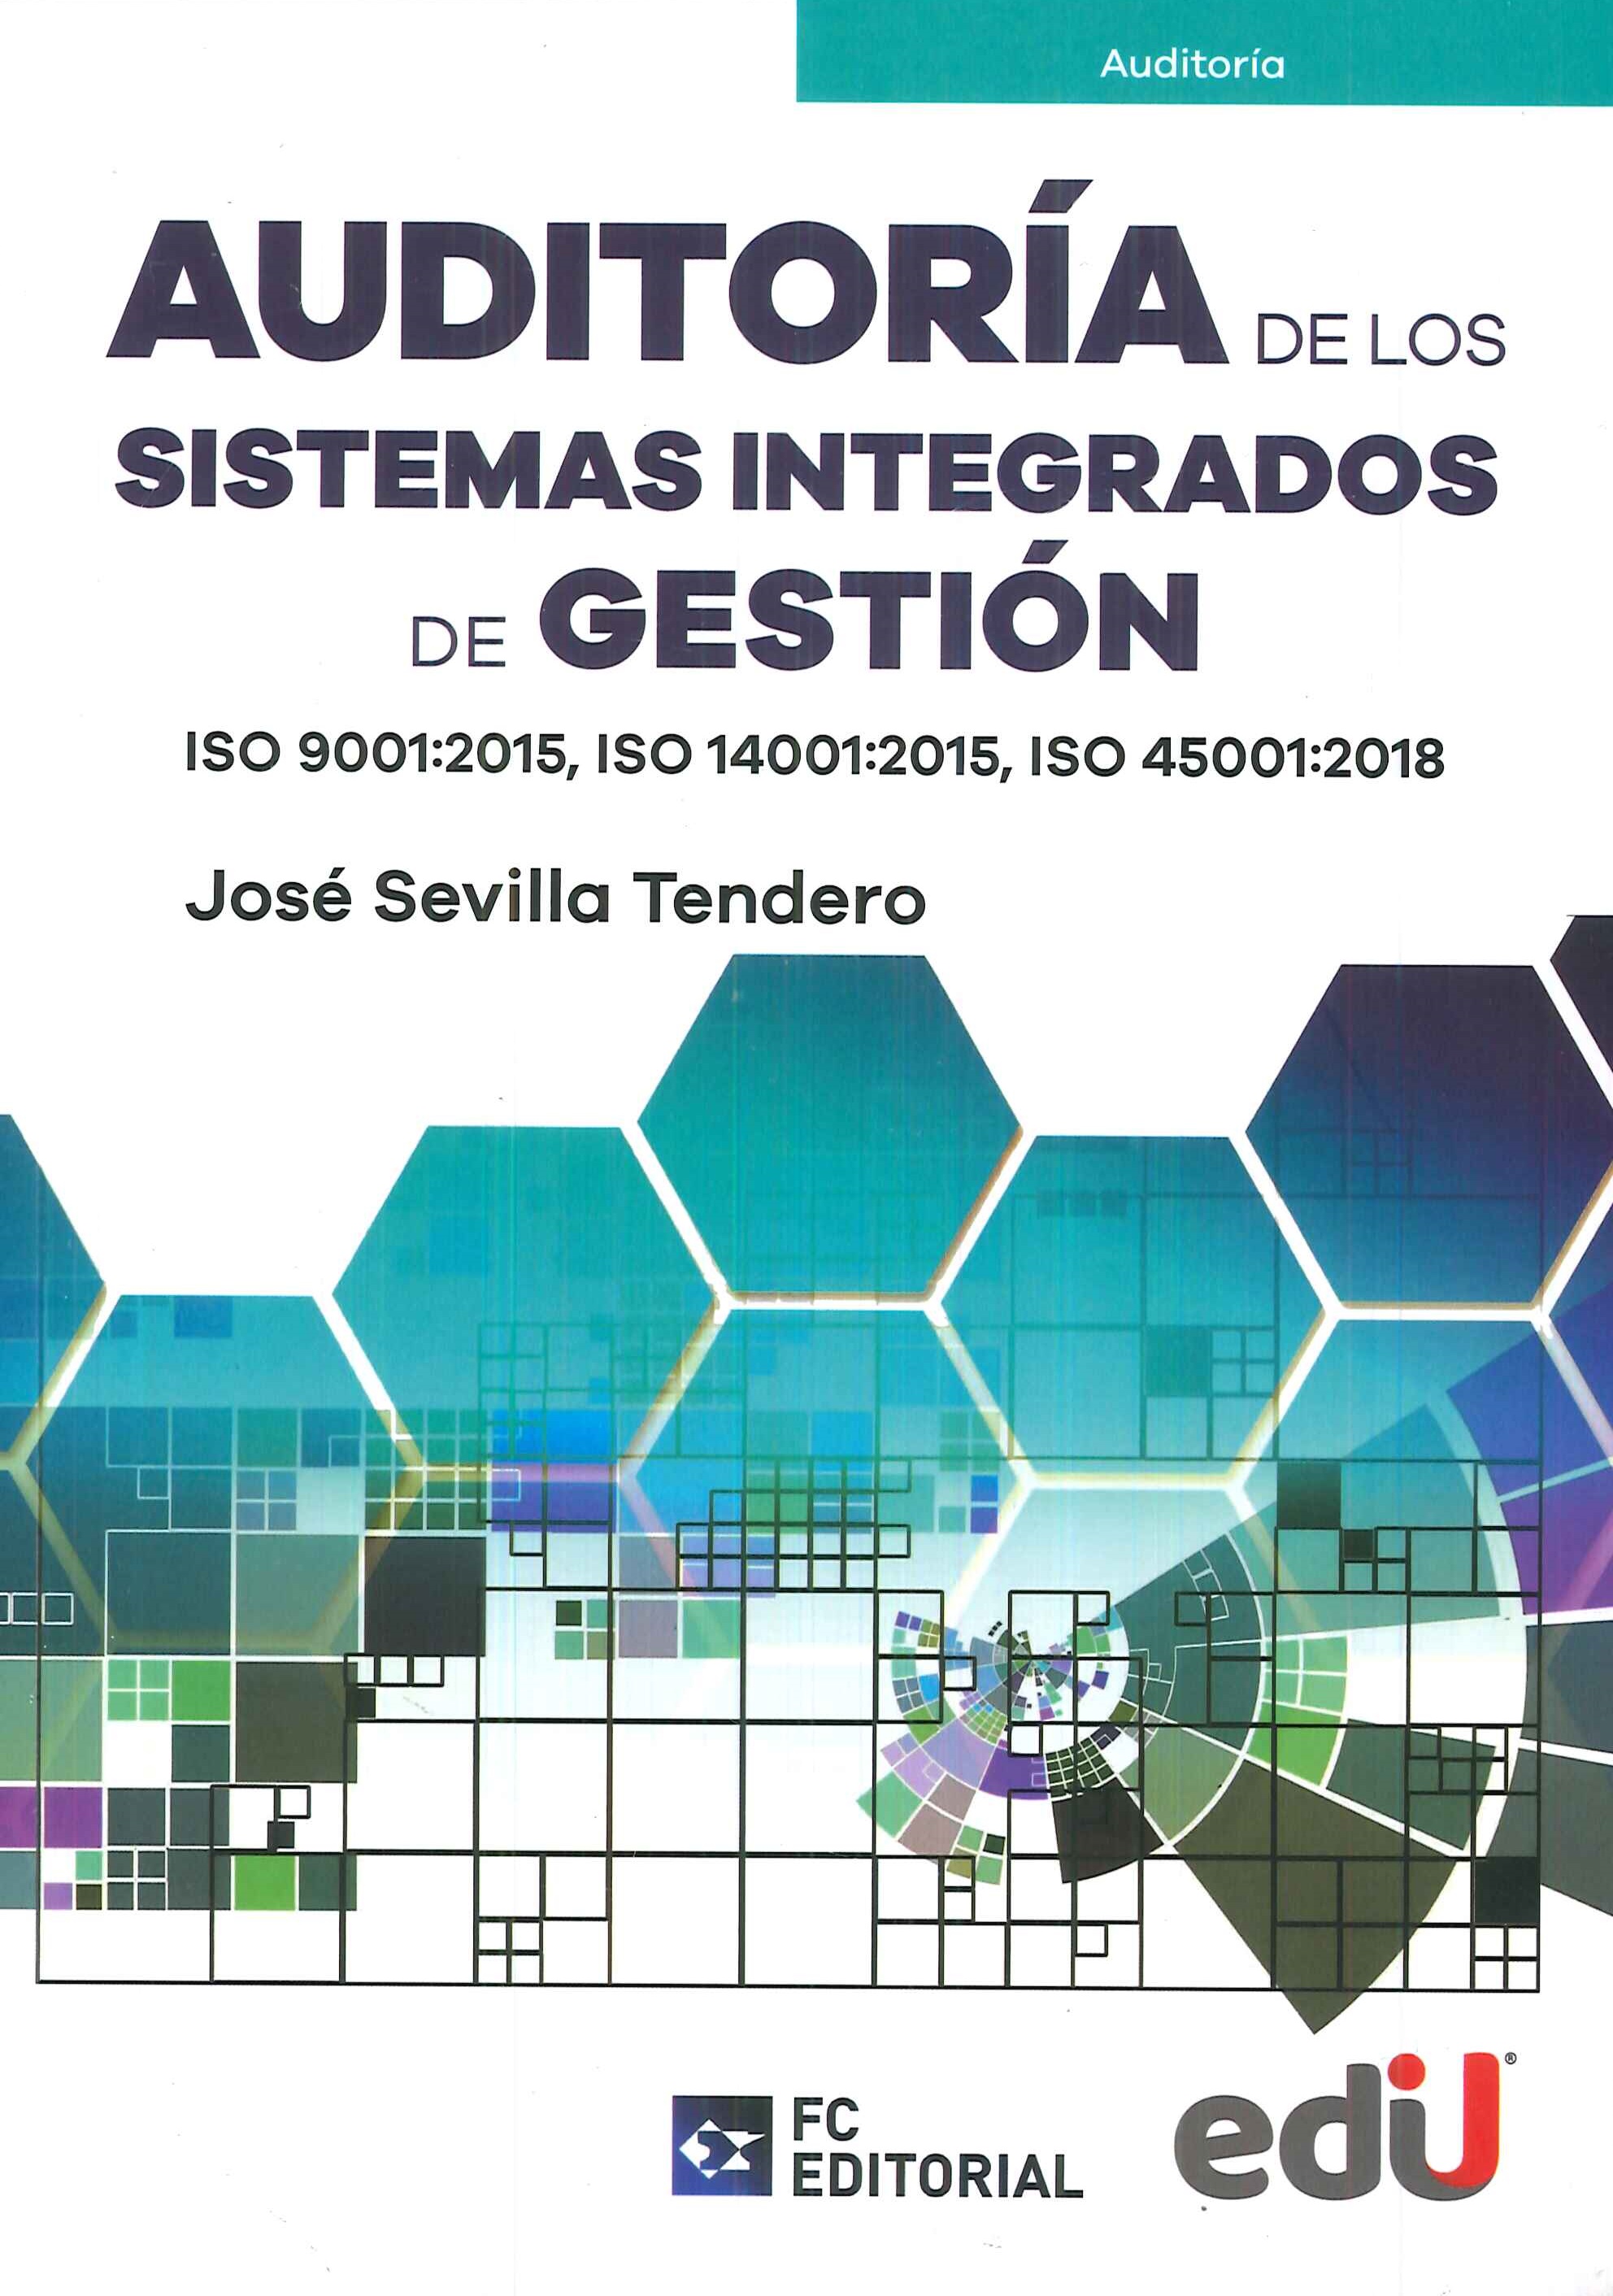 Auditoría de los Sistemas Integrados de Gestión ISO 9001: 20105, ISO 14001: 2015, ISO 45001: 2018